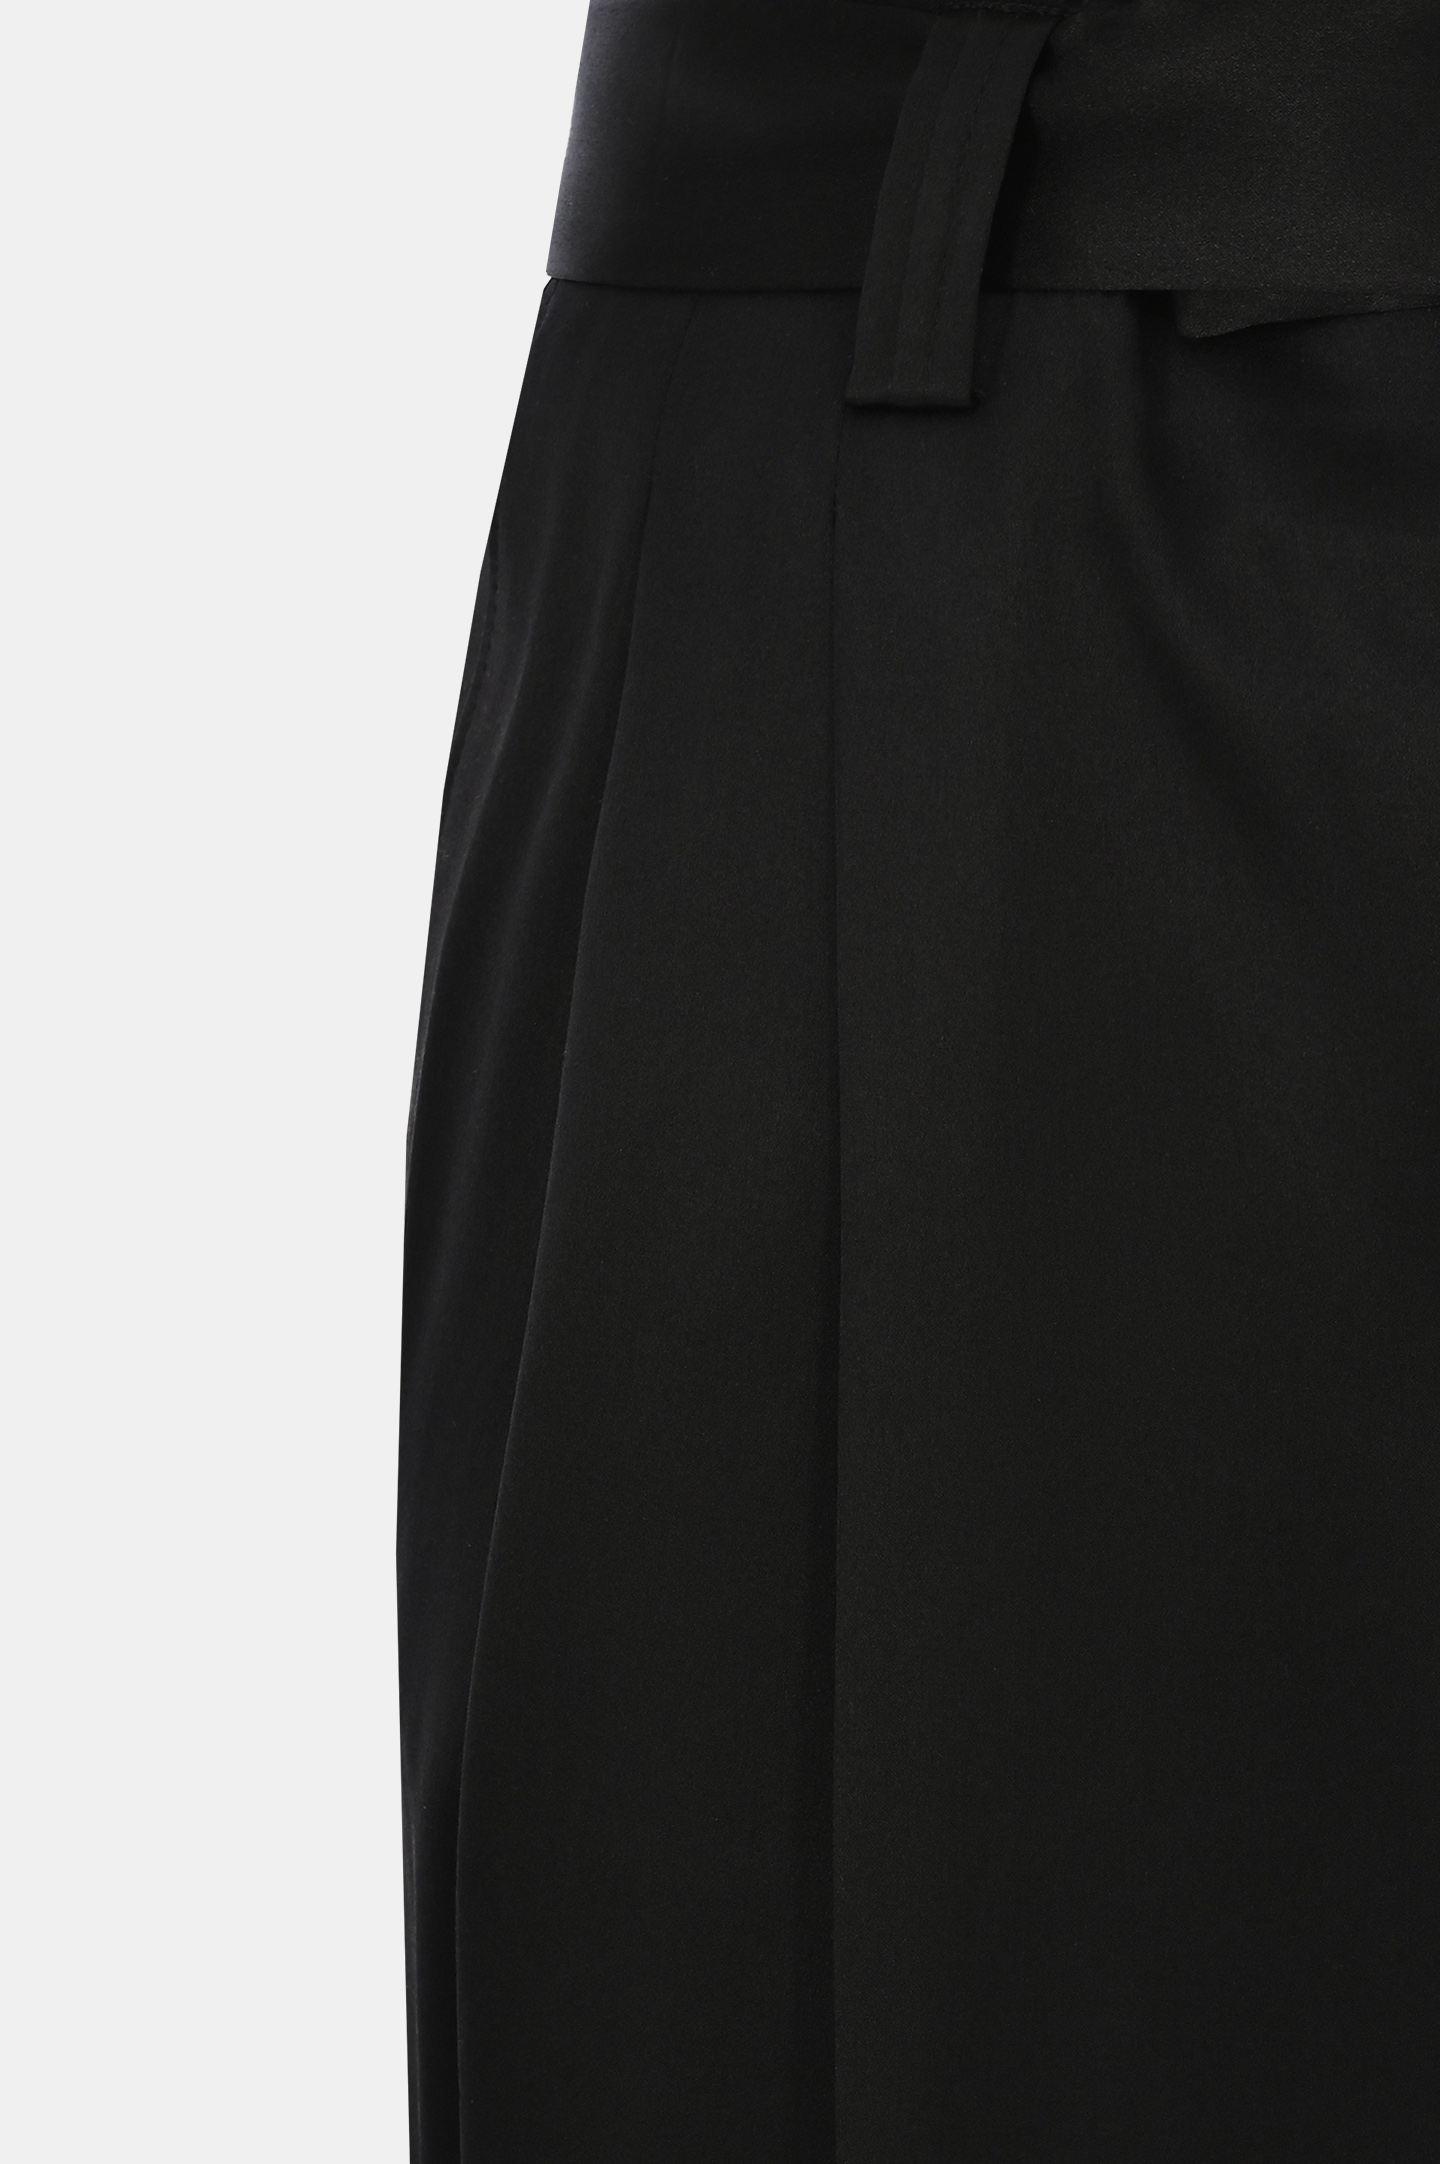 Широкие брюки из шелка с ремнем JACOB LEE WWP056SS24, цвет: Черный, Женский